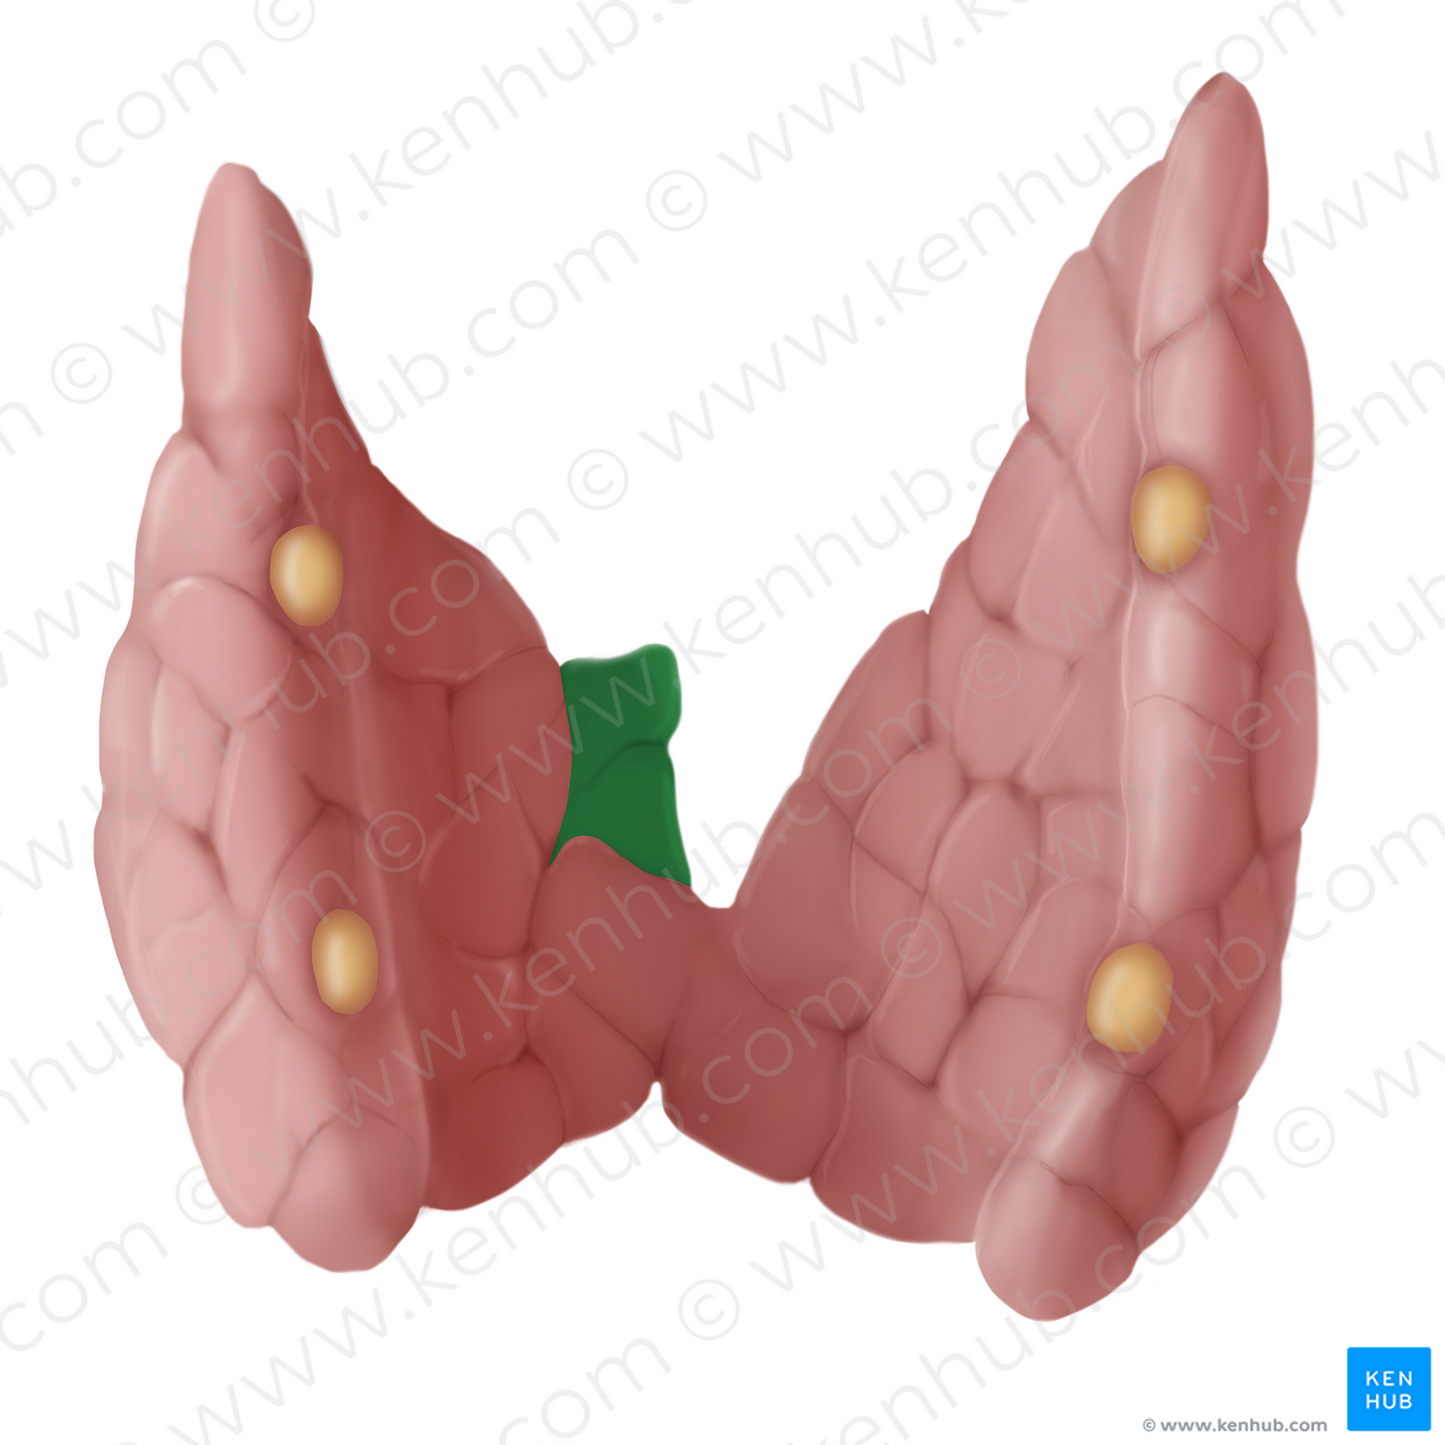 Pyramidal lobe of thyroid gland (#14112)